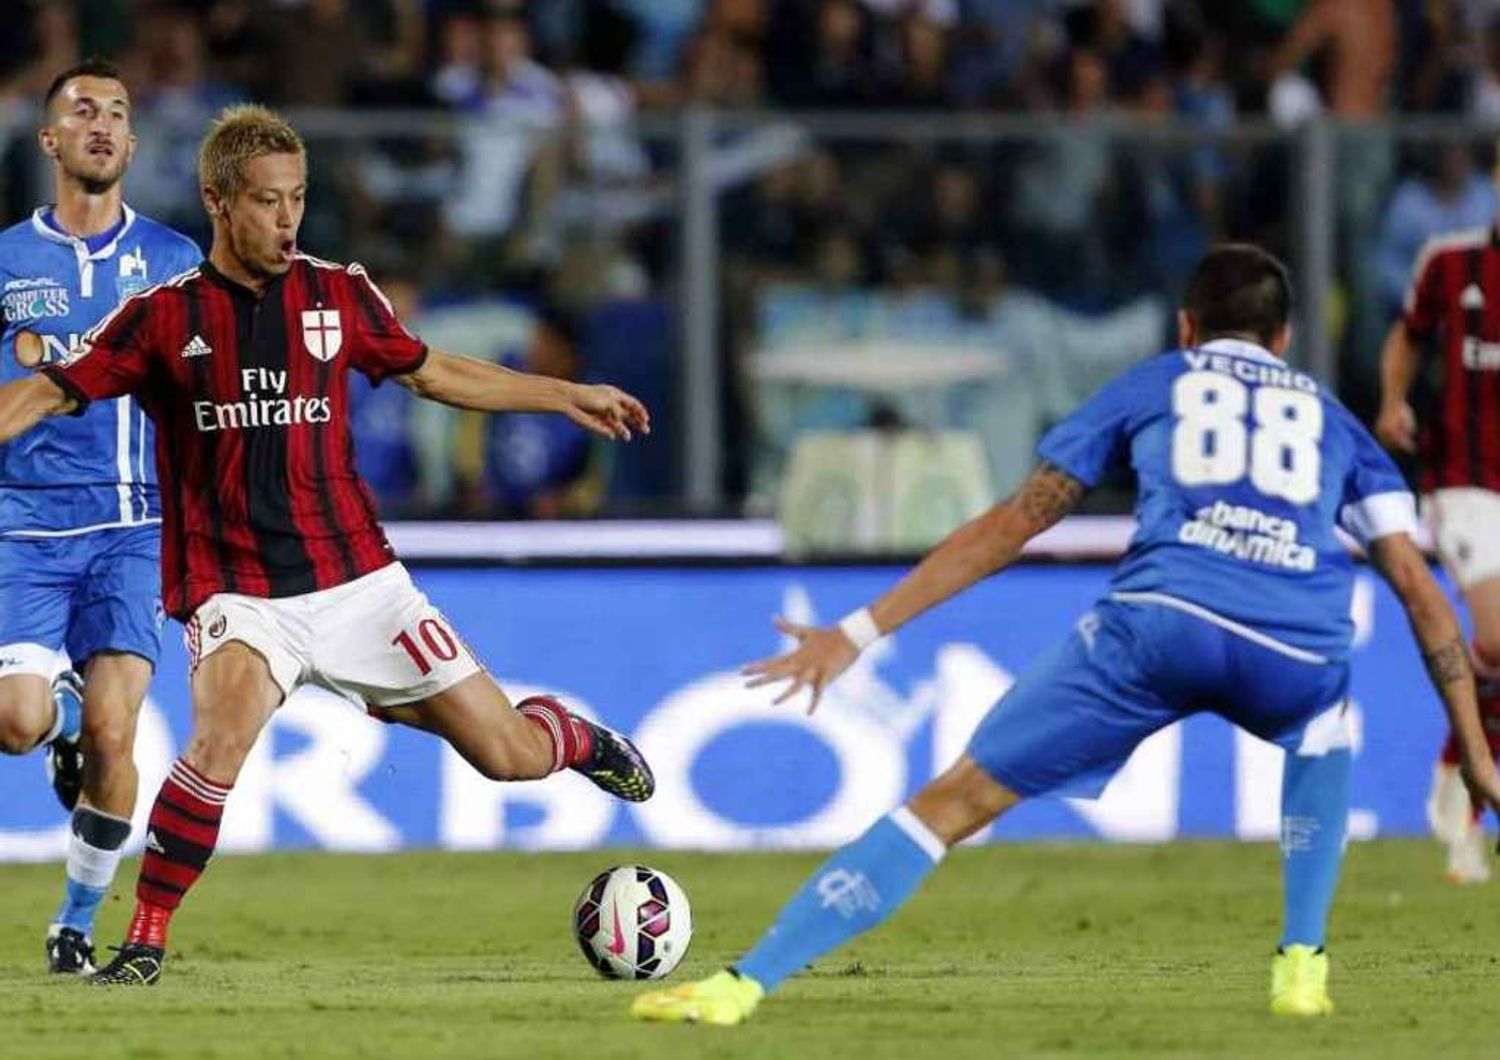 Calcio: Empoli-Milan 2-2, notte di sofferenza per il Diavolo